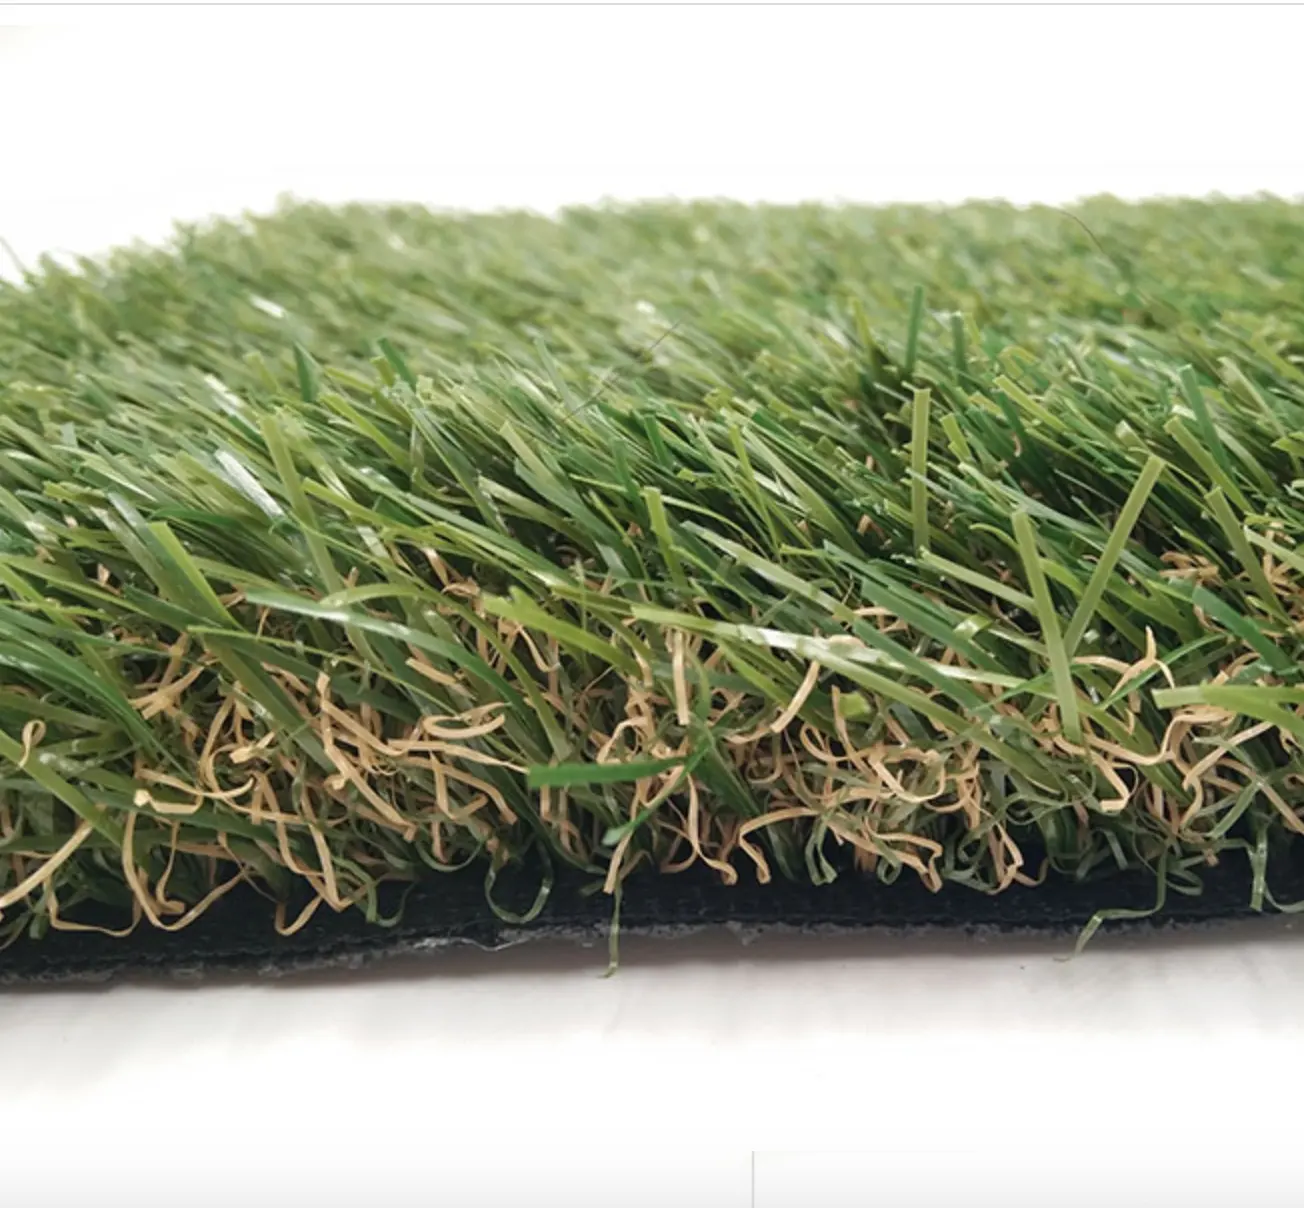 50 мм 40 мм 60 мм пышная искусственная трава газон для игровой площадки синтетическая трава искусственный газон для украшения сада